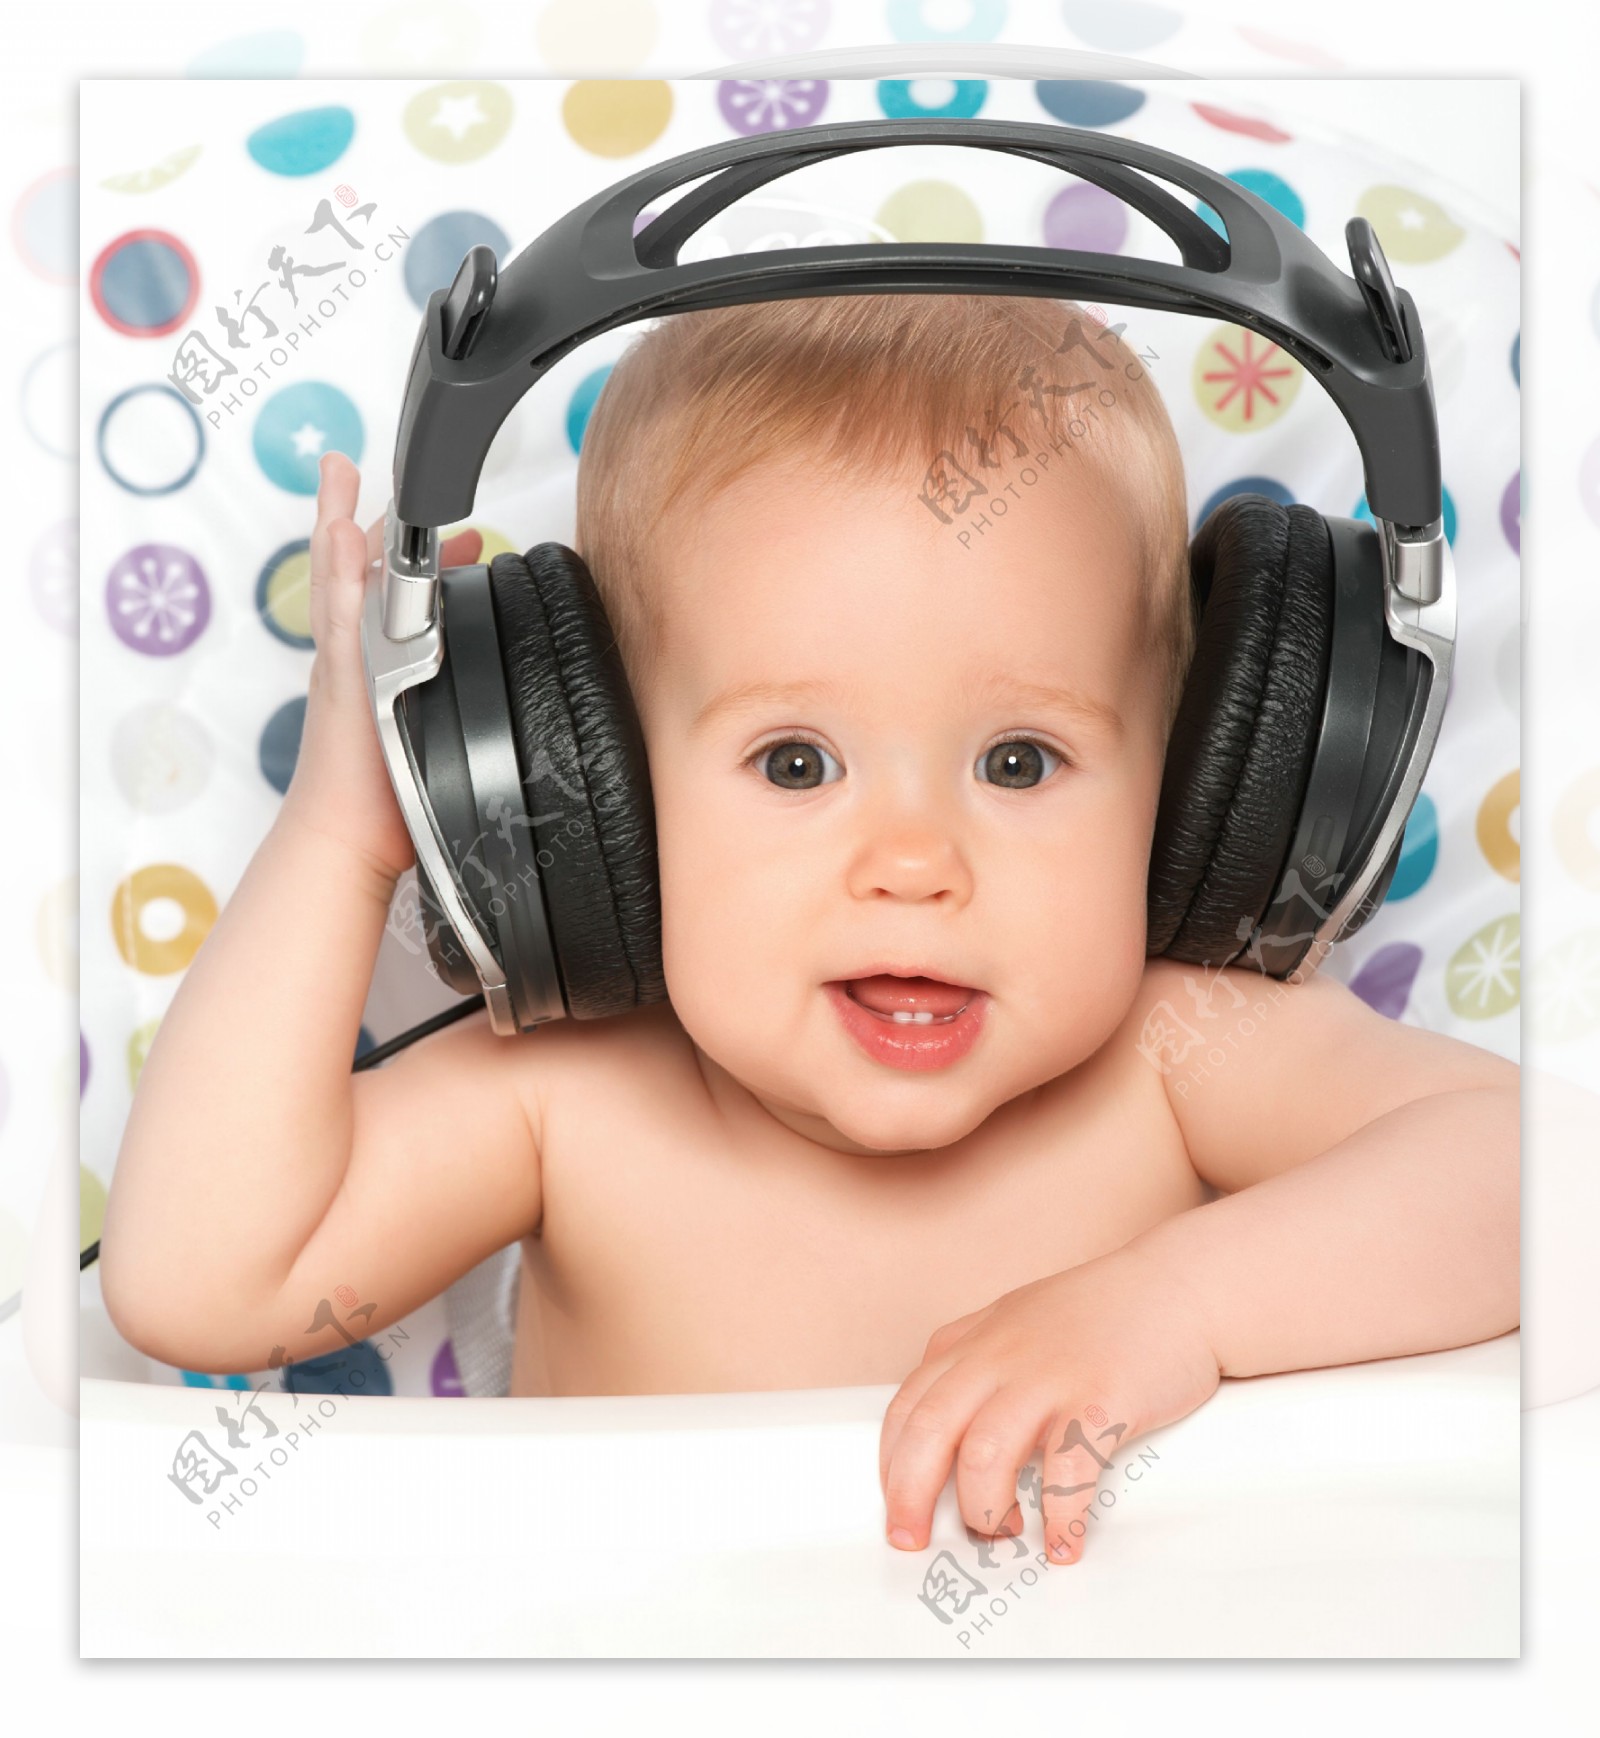 戴着大耳机的小男孩听音乐 库存图片. 图片 包括有 表达式, 偶然, 孩子, 耳朵, 投反对票, 倾听 - 214655199